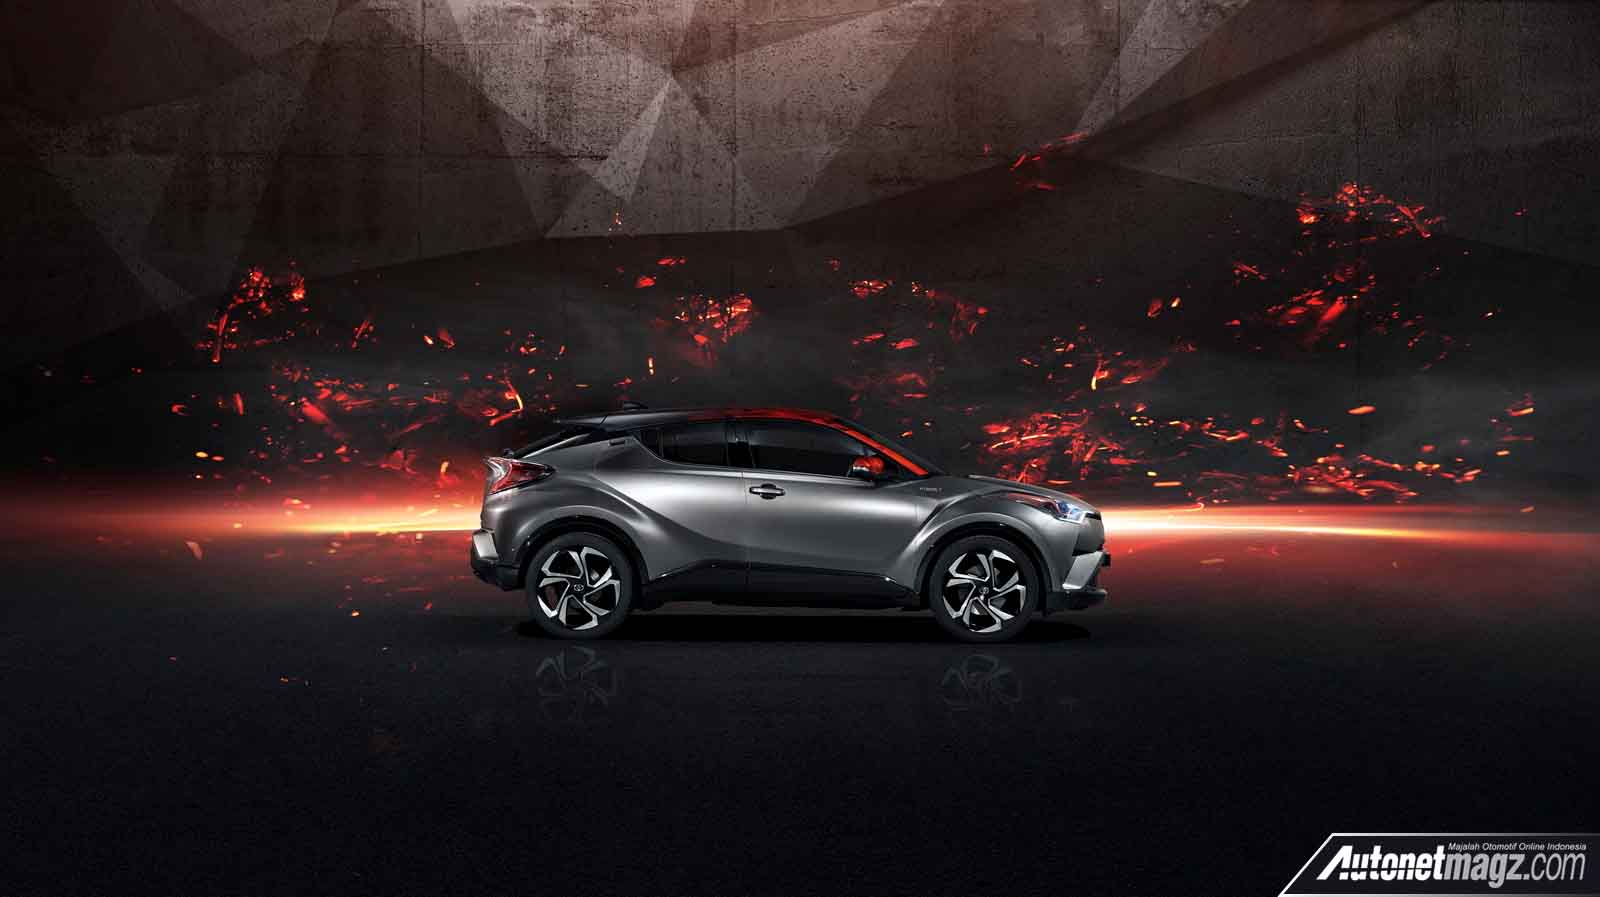 Berita, sisi samping Toyota C-HR Hy-Power Concept: Frankfurt Motor Show 2017 : Toyota C-HR Hy-Power Concept Diperkenalkan